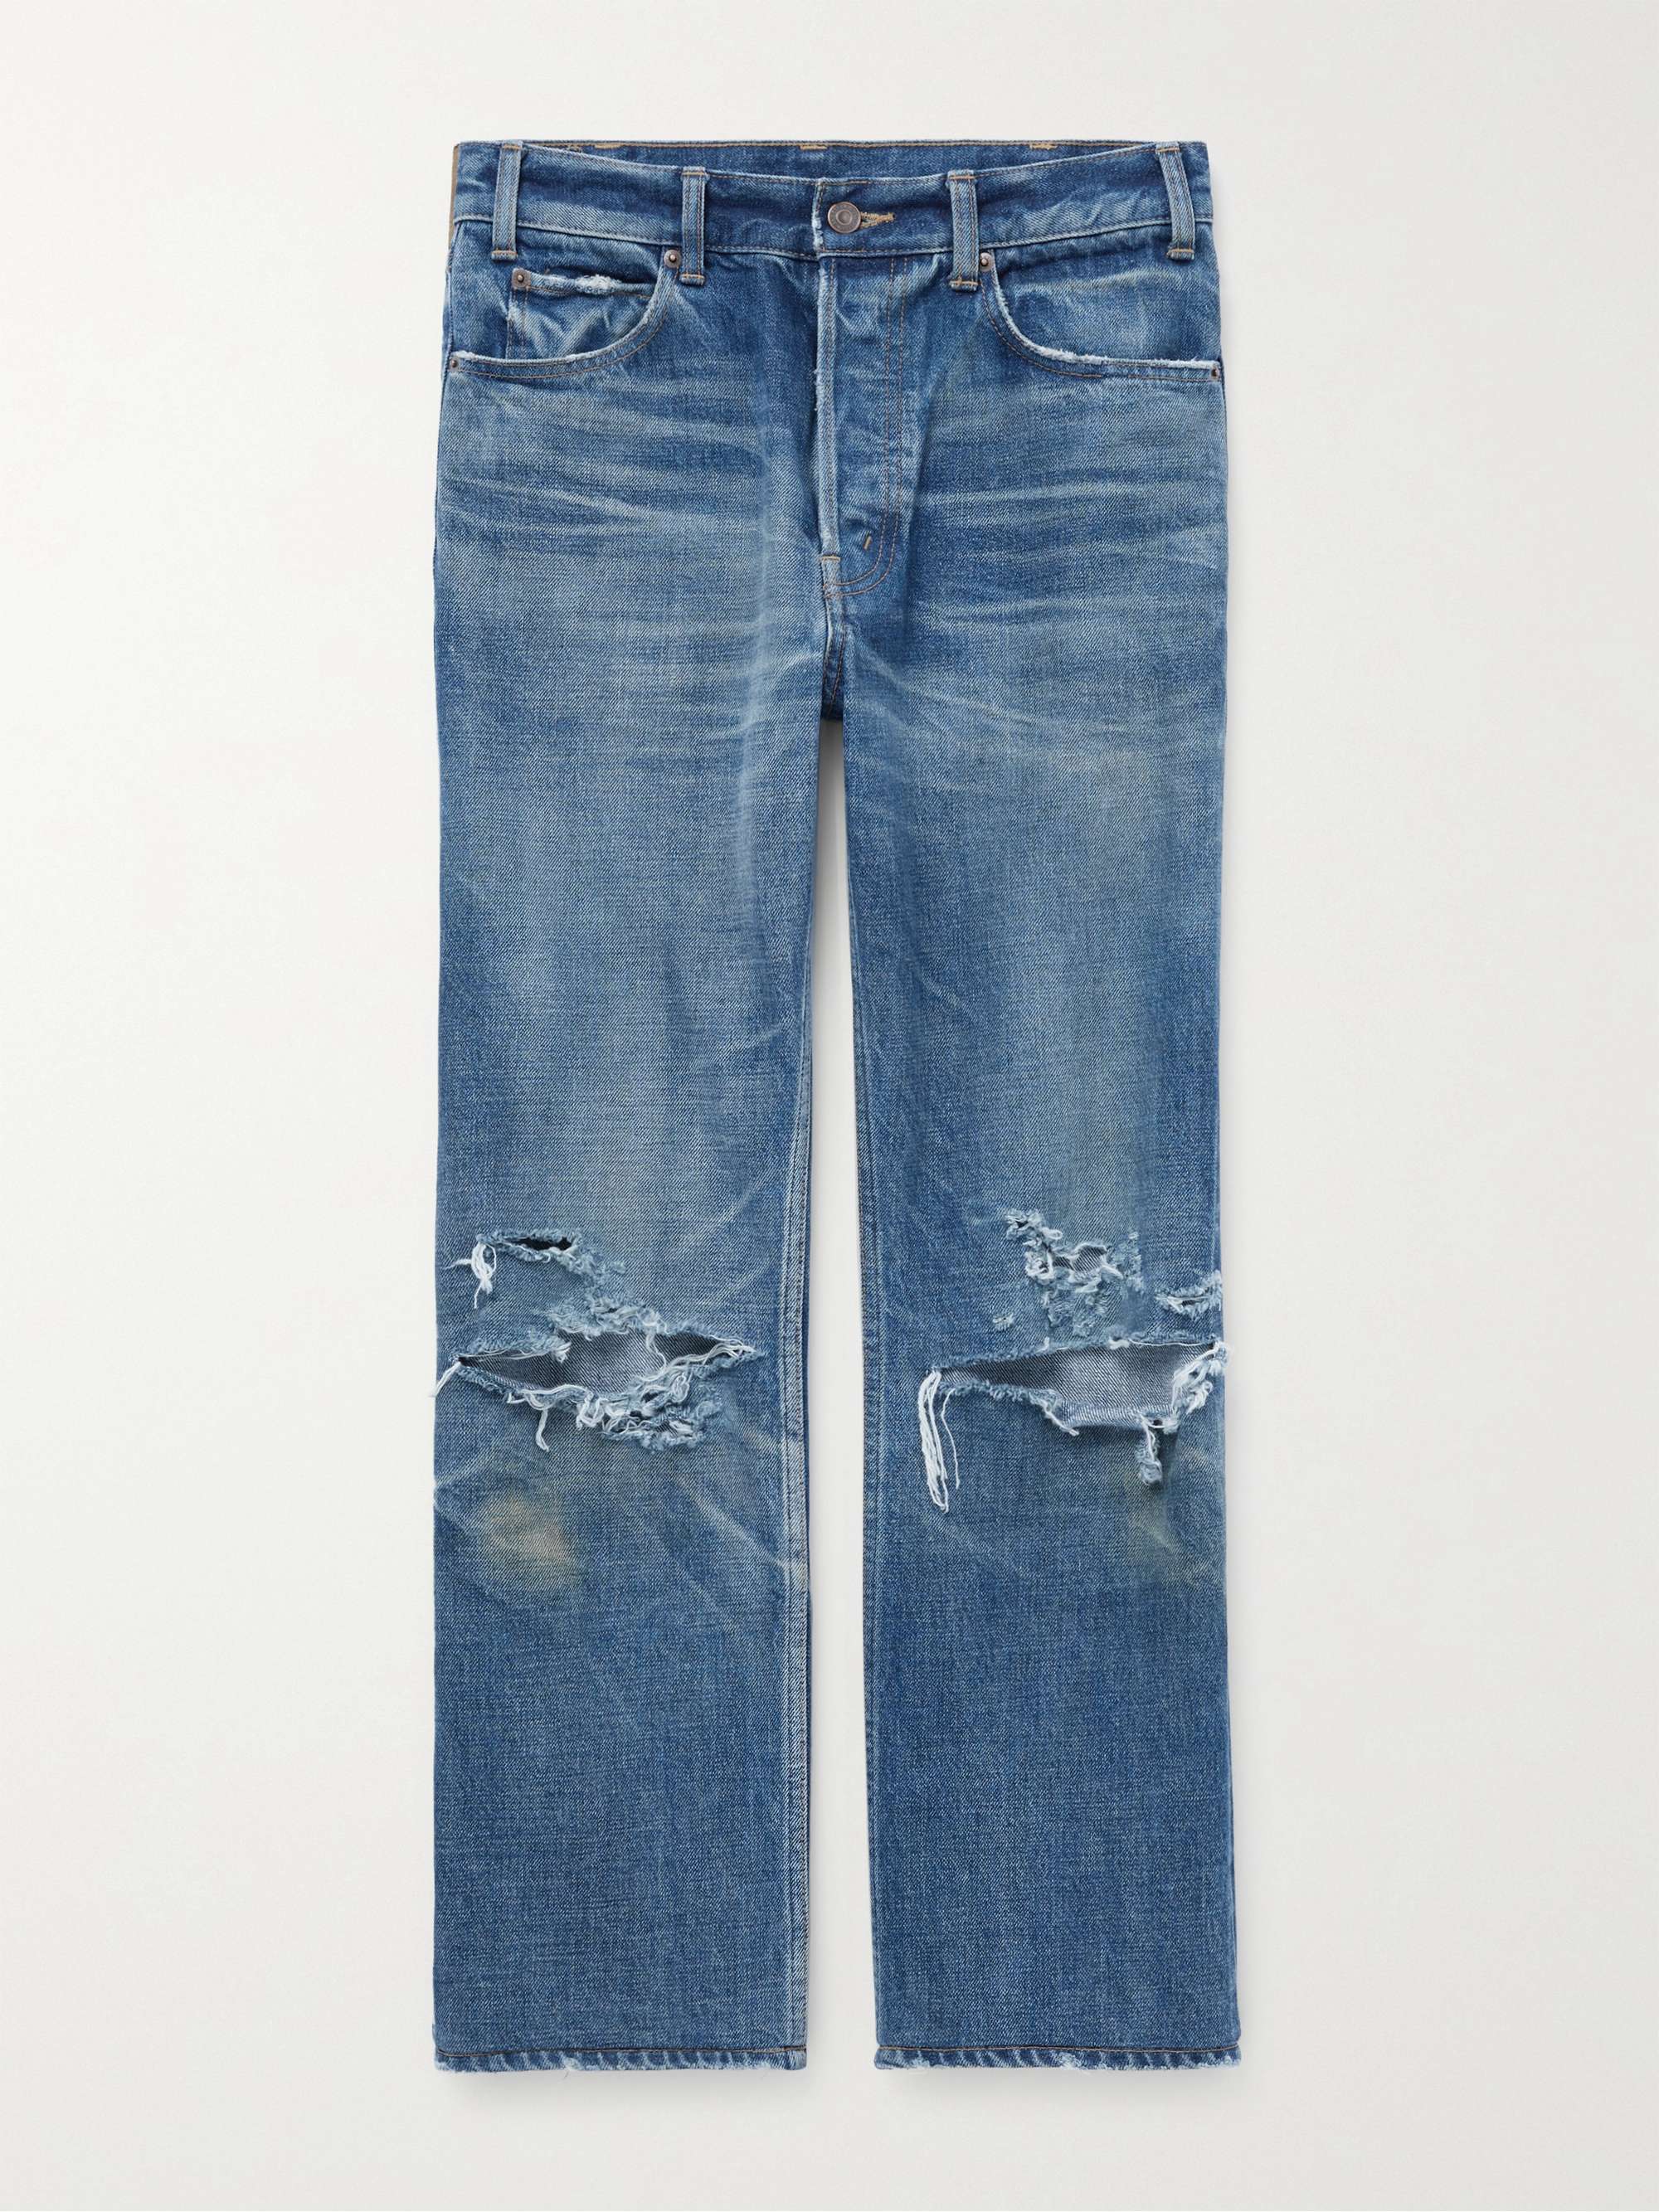 셀린느 옴므 커트 셀비지 청바지 CELINE HOMME Kurt Slim-Fit Cropped Distressed Selvedge Jeans,Blue